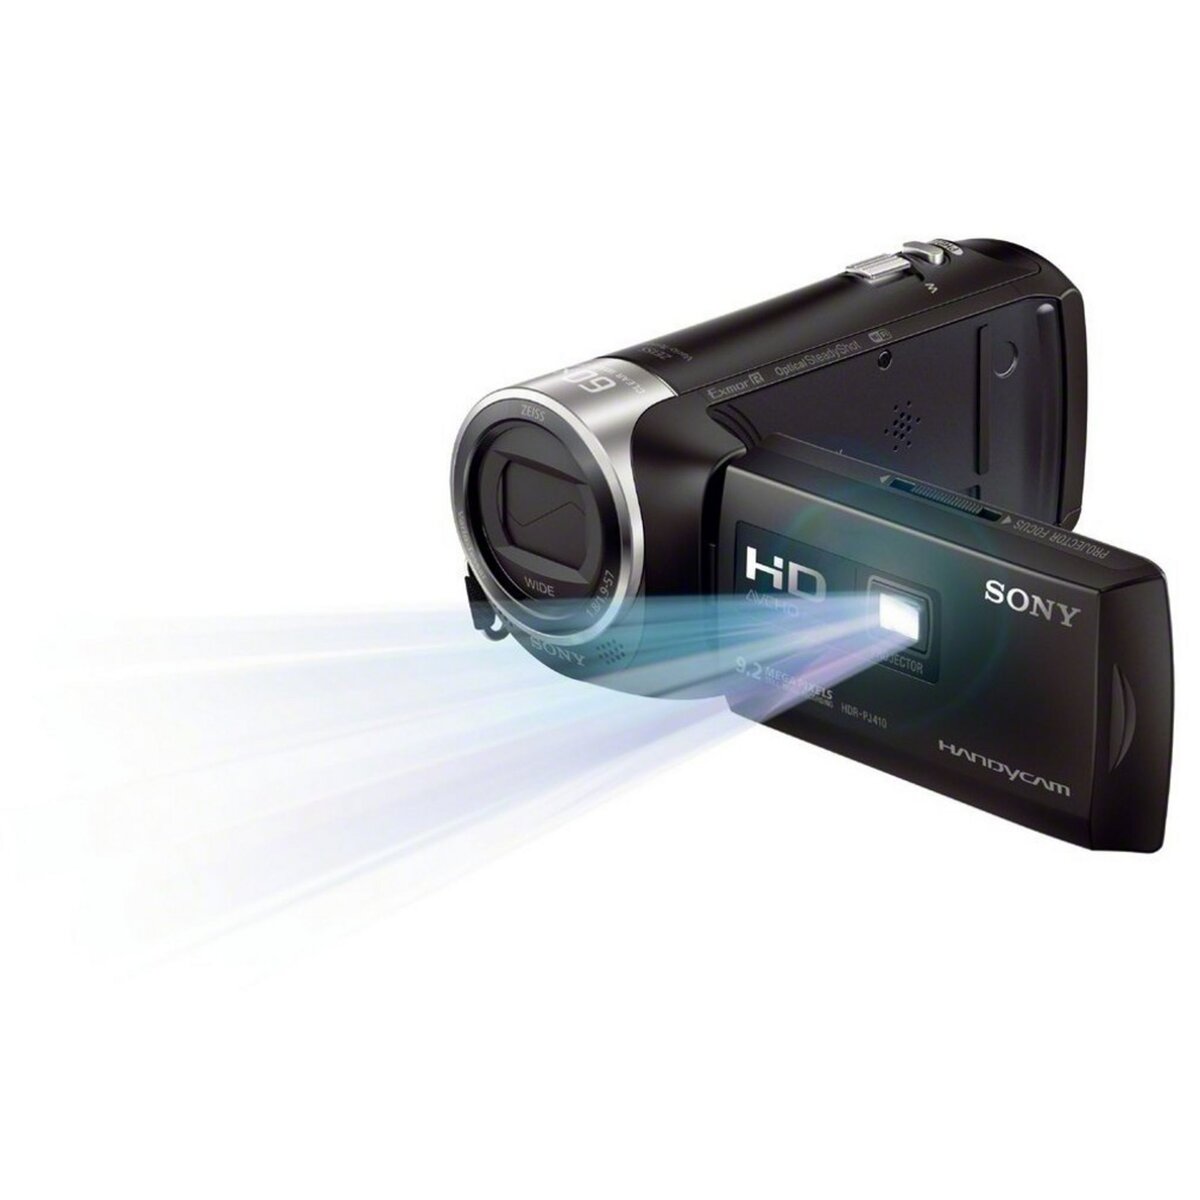 SONY Caméscope Numérique - HDR PJ410 - Full HD pas cher 